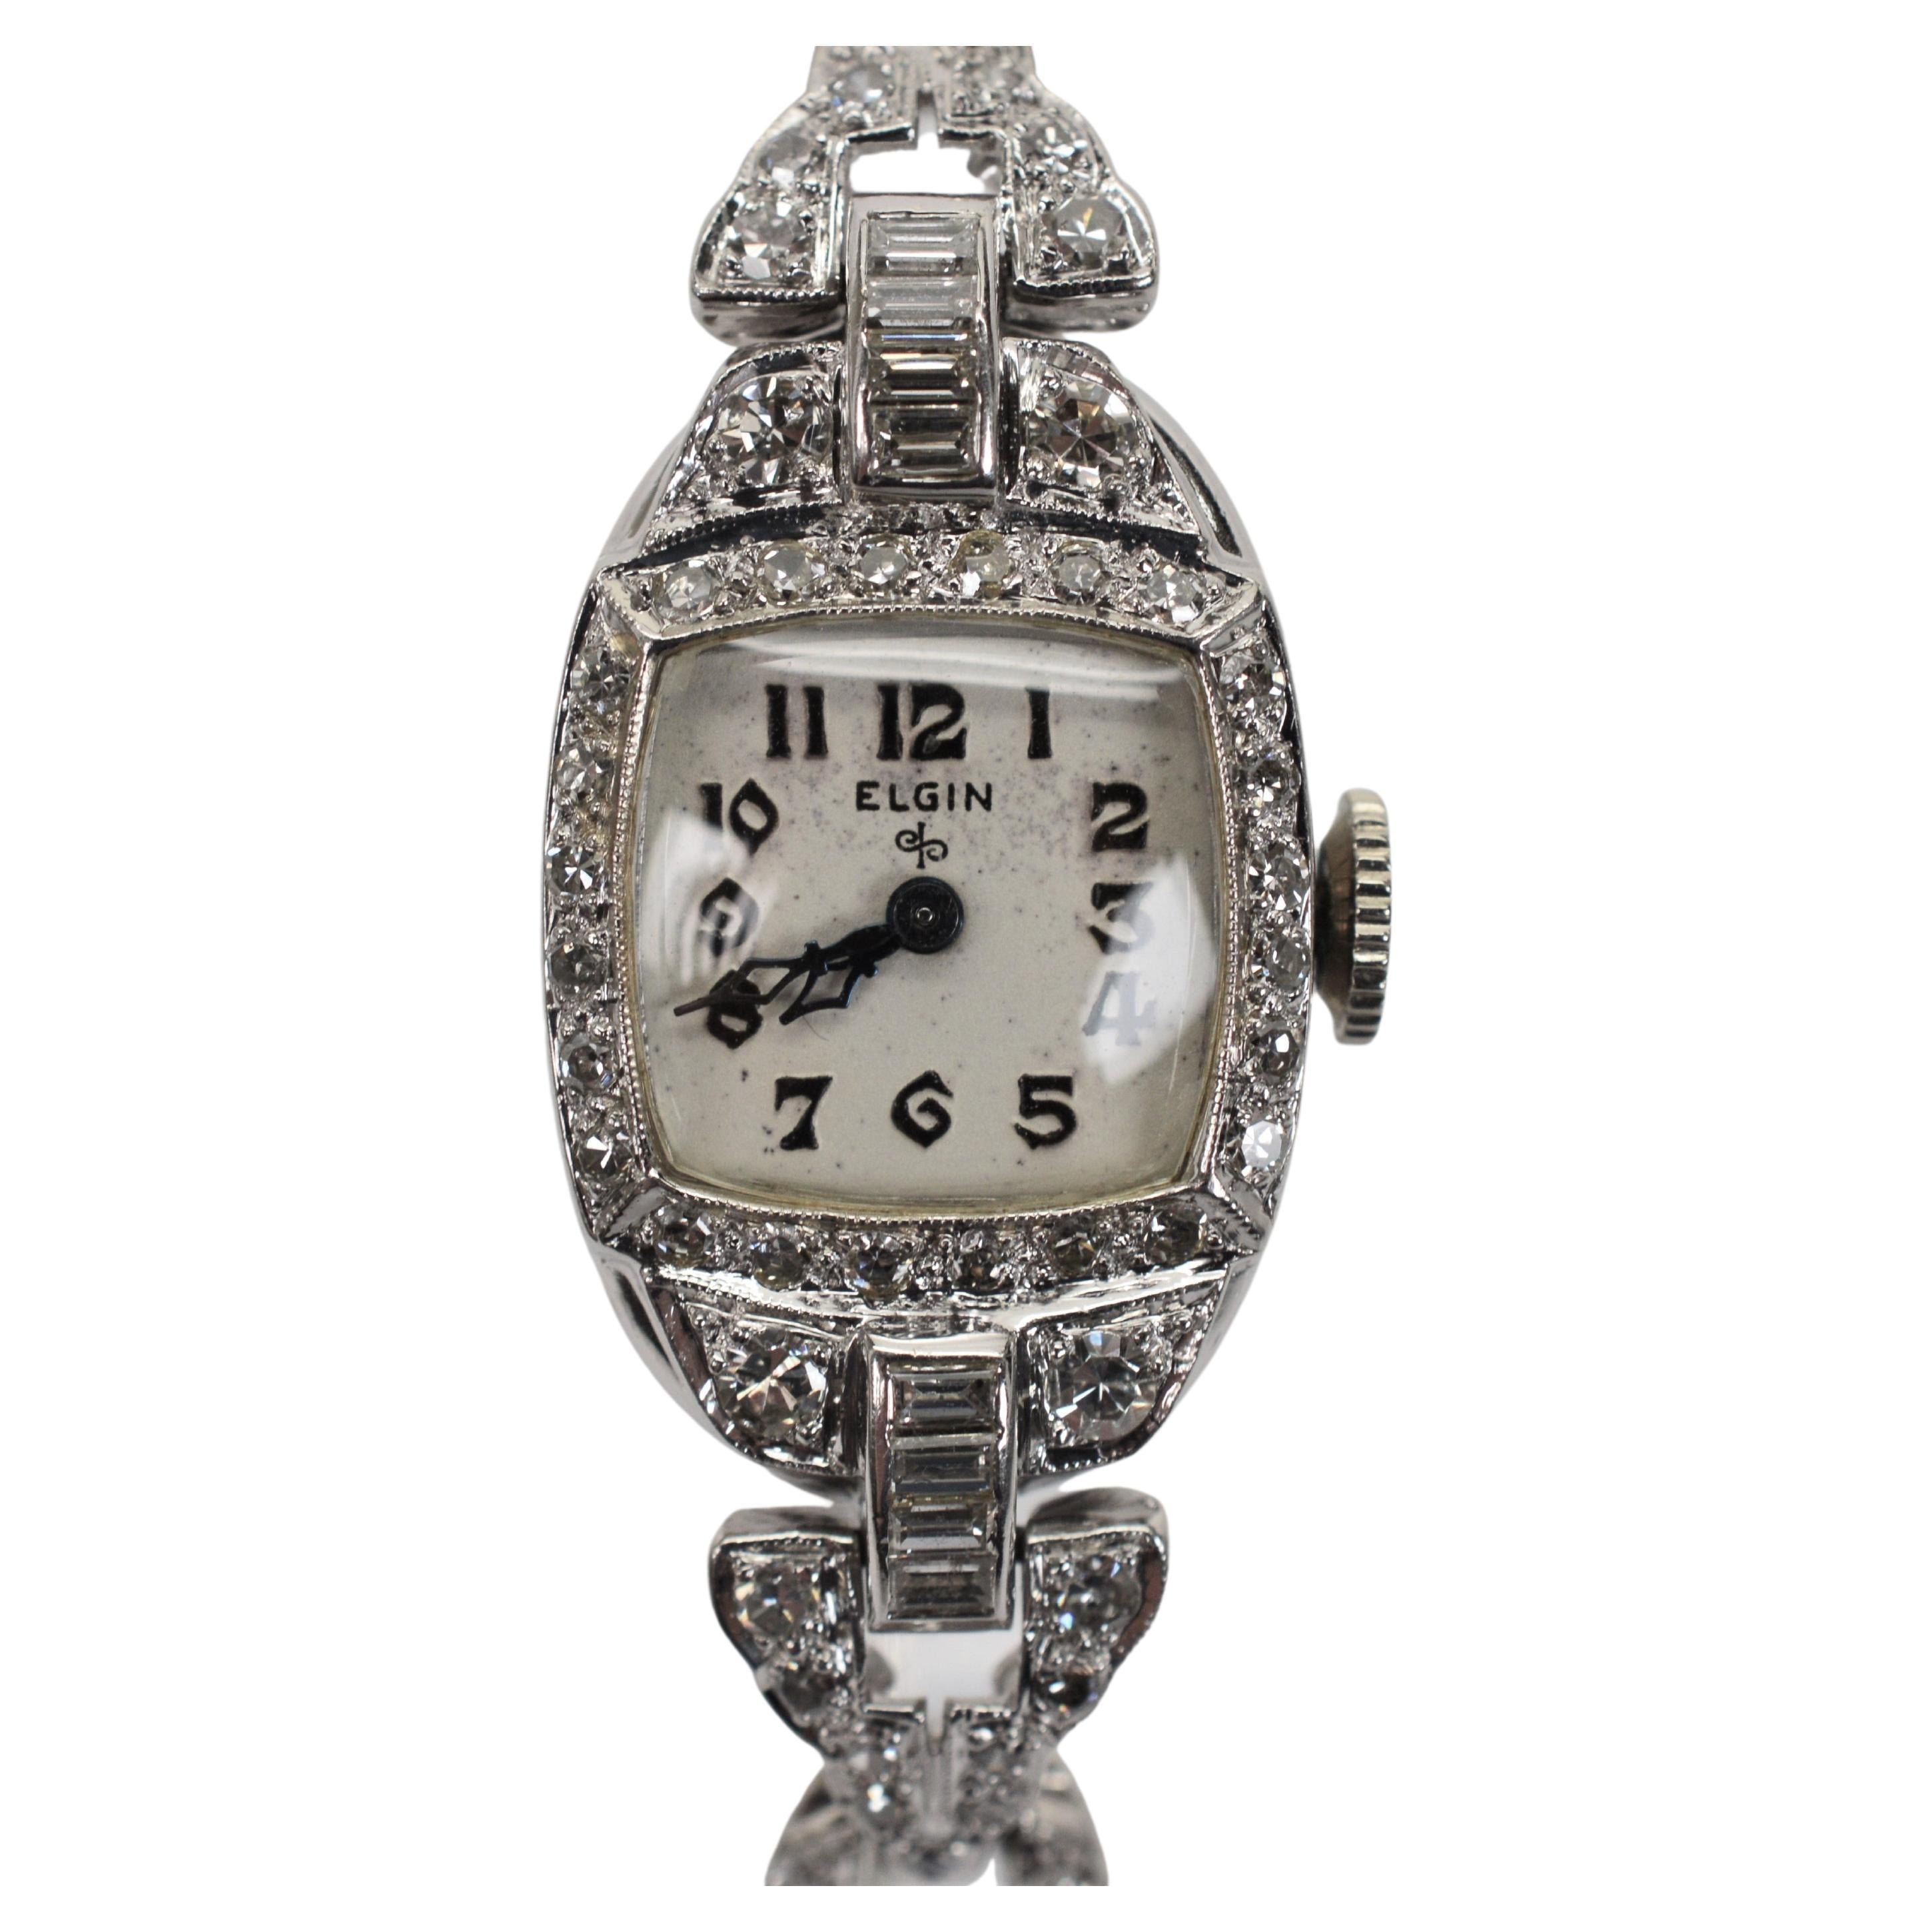 La combinaison parfaite de diamants et de platine donne l'heure à cette spectaculaire montre-bracelet Art déco pour dames d'Elgin Watch Co. Whiting de deux carats de diamants ronds à facettes, cette élégante montre habillée pour femmes brille de